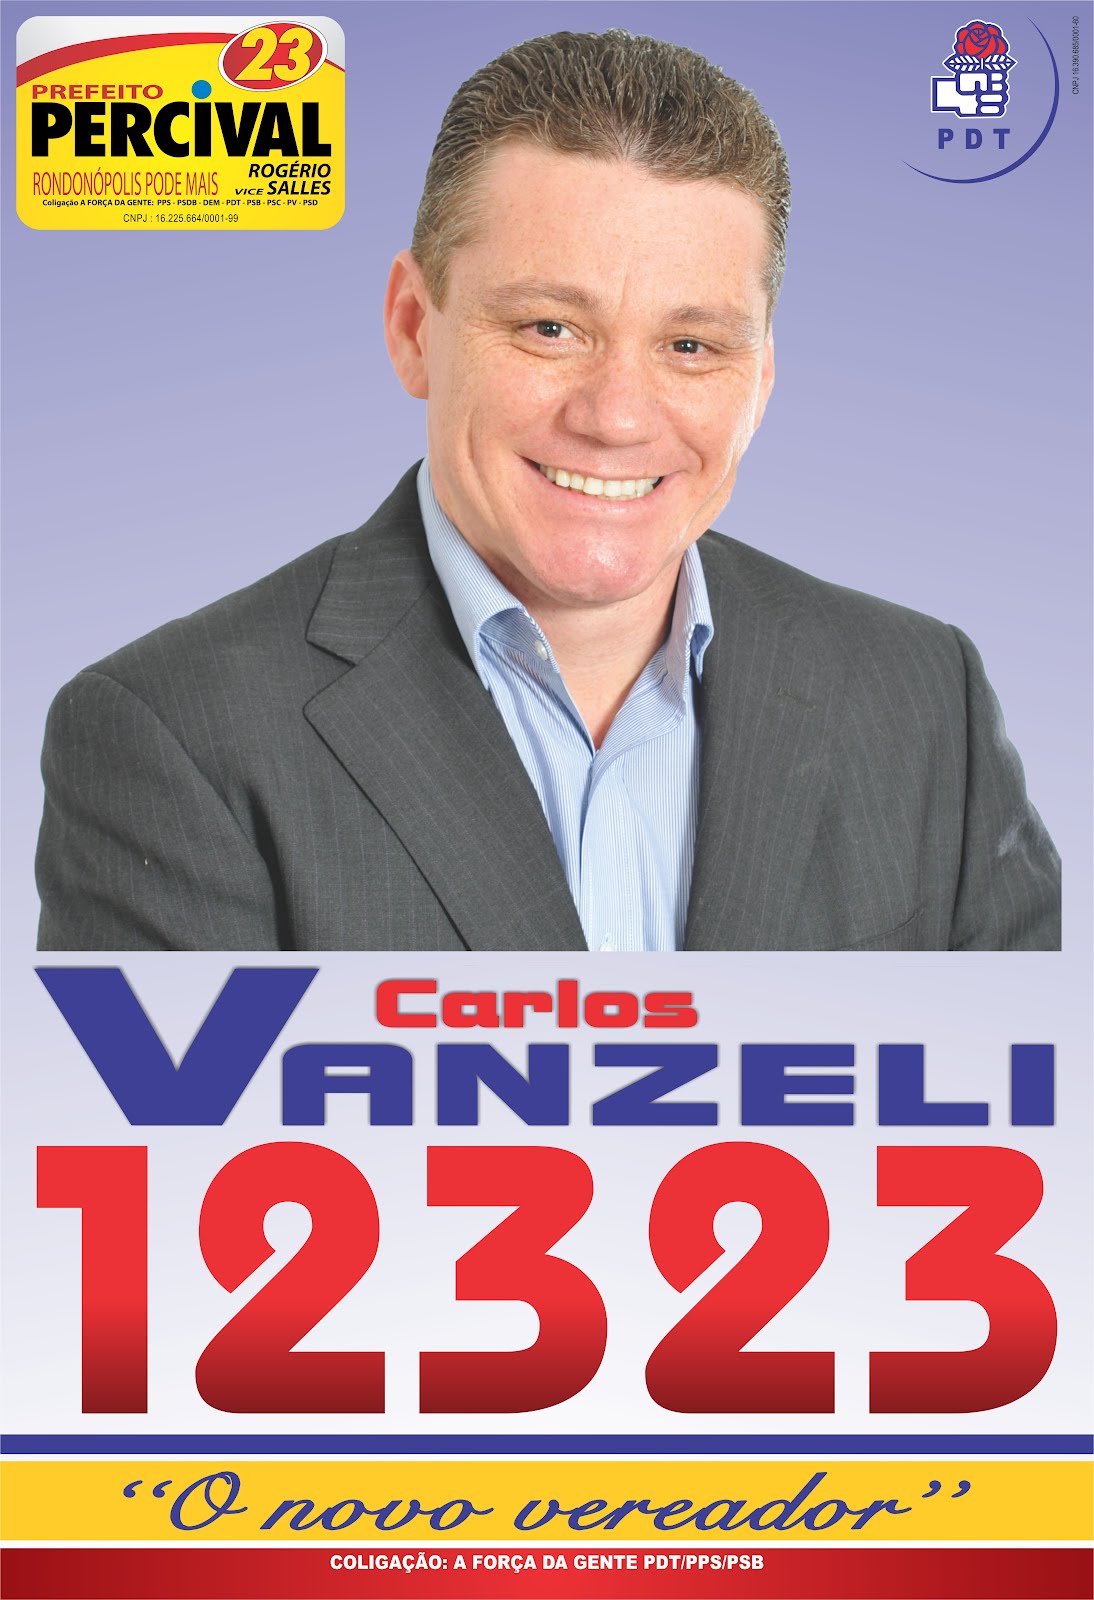 Carlos Vanzeli - 12323